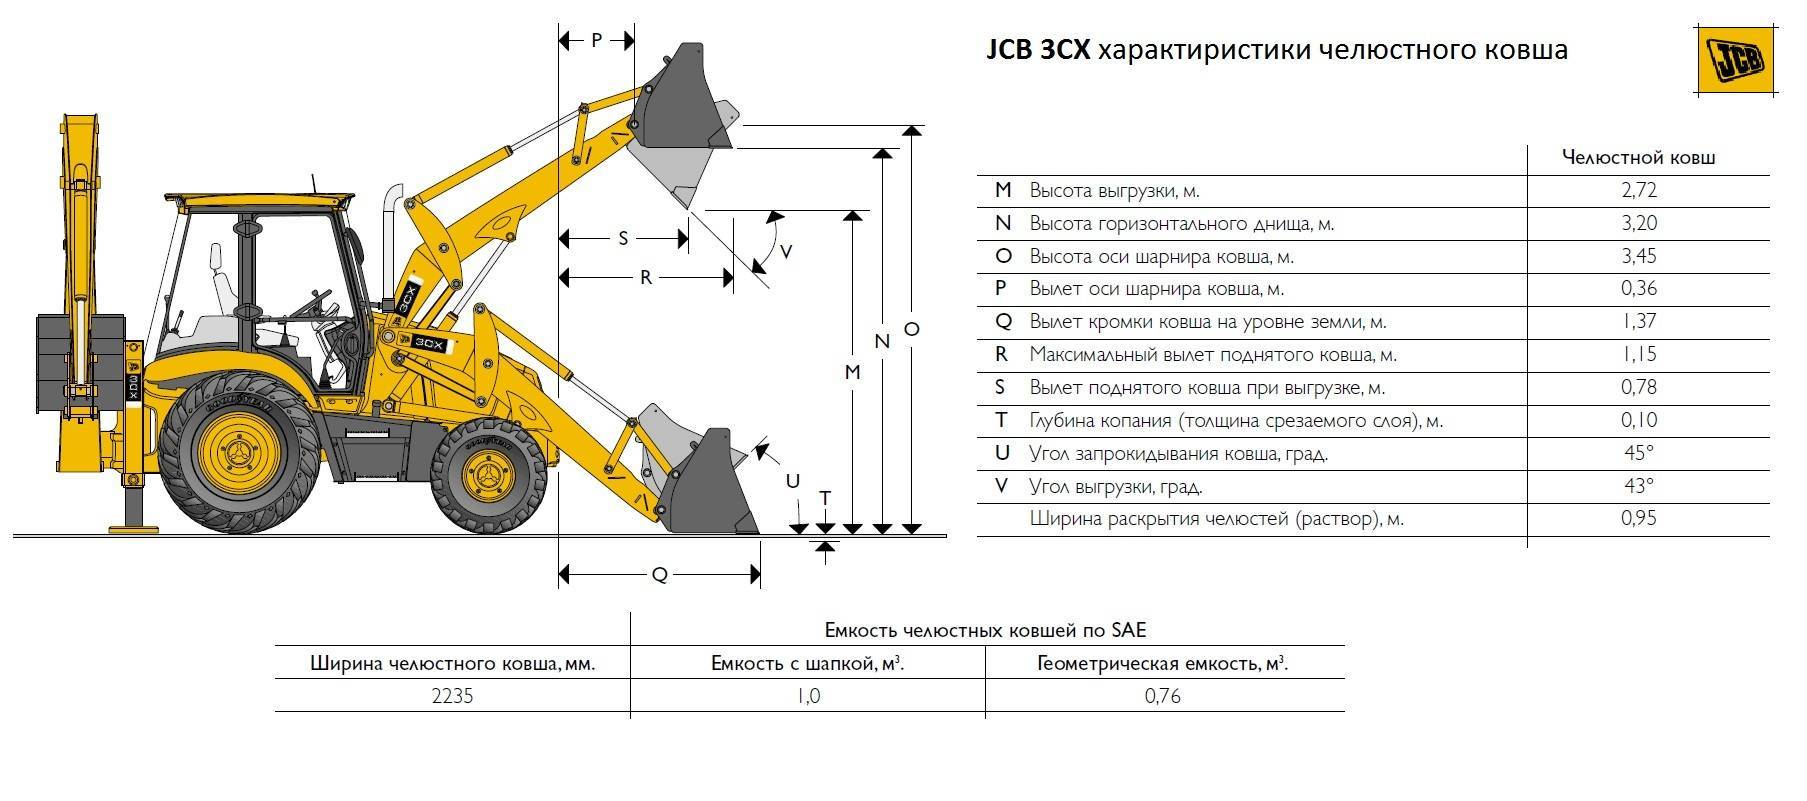 Jcb 1cx: технические характеристики